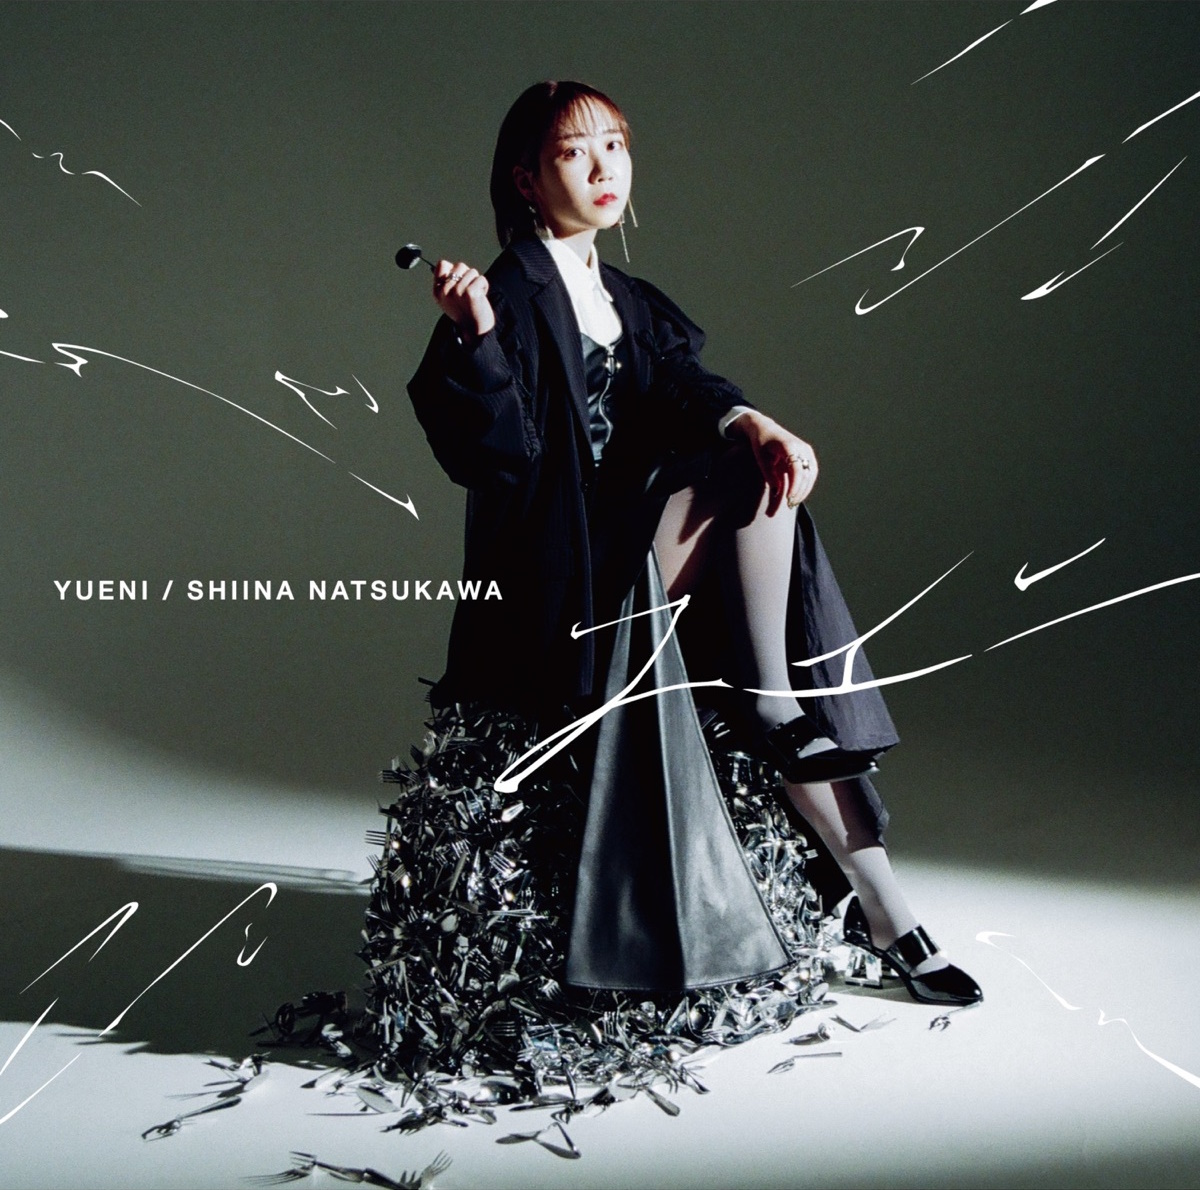 Cover art for『Shiina Natsukawa - YUENI』from the release『YUENI』